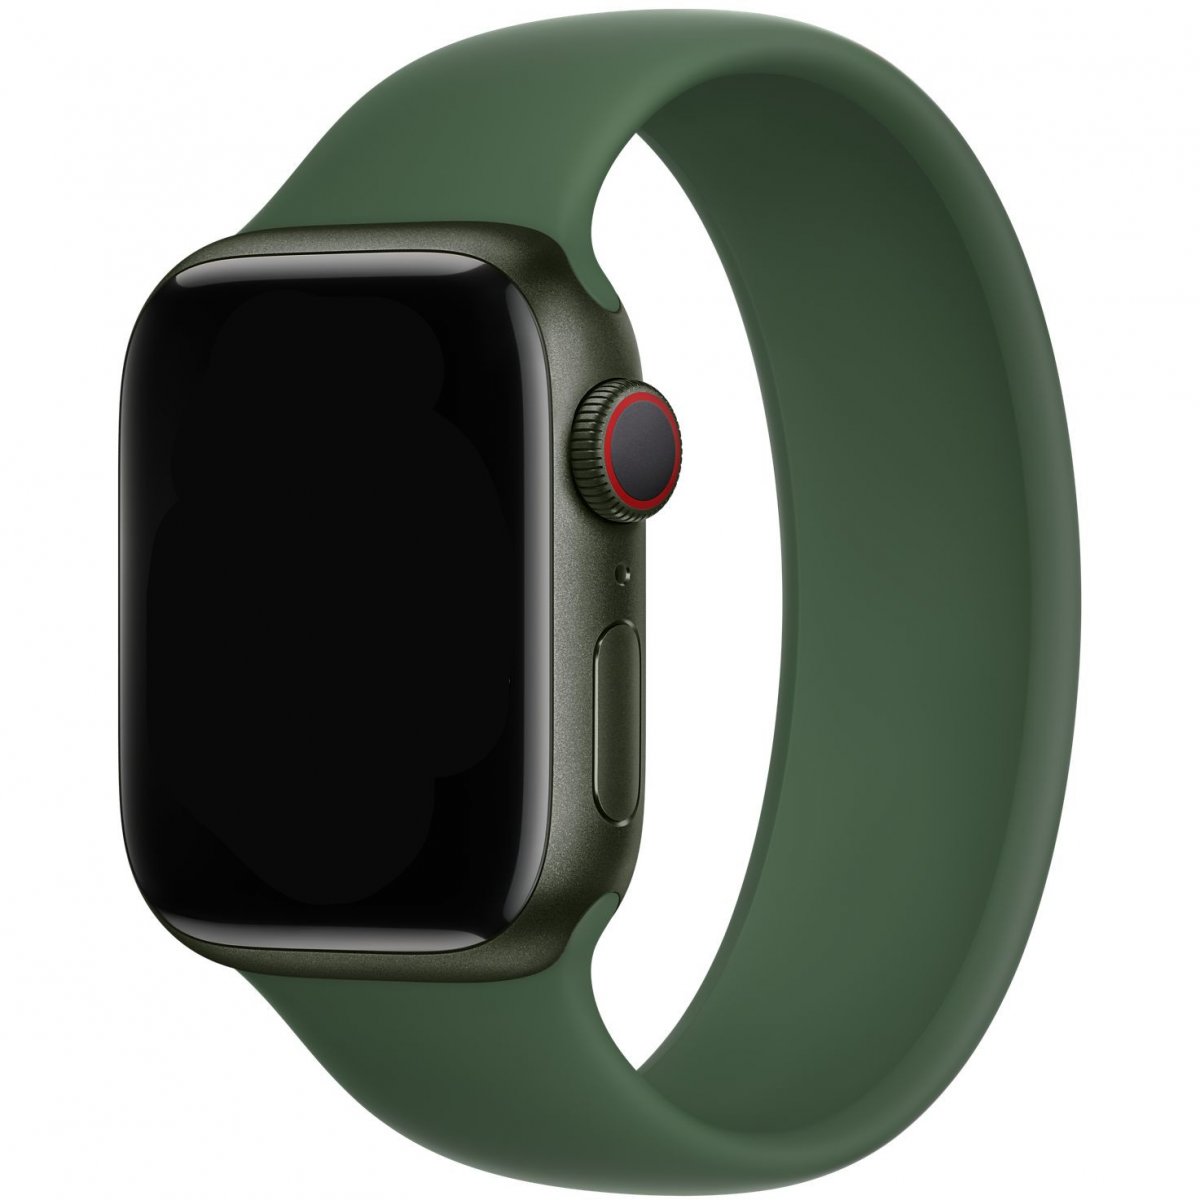 Řemínek iMore Solo Loop Apple Watch Series 1/2/3 38mm - Jetelově zelená (L)